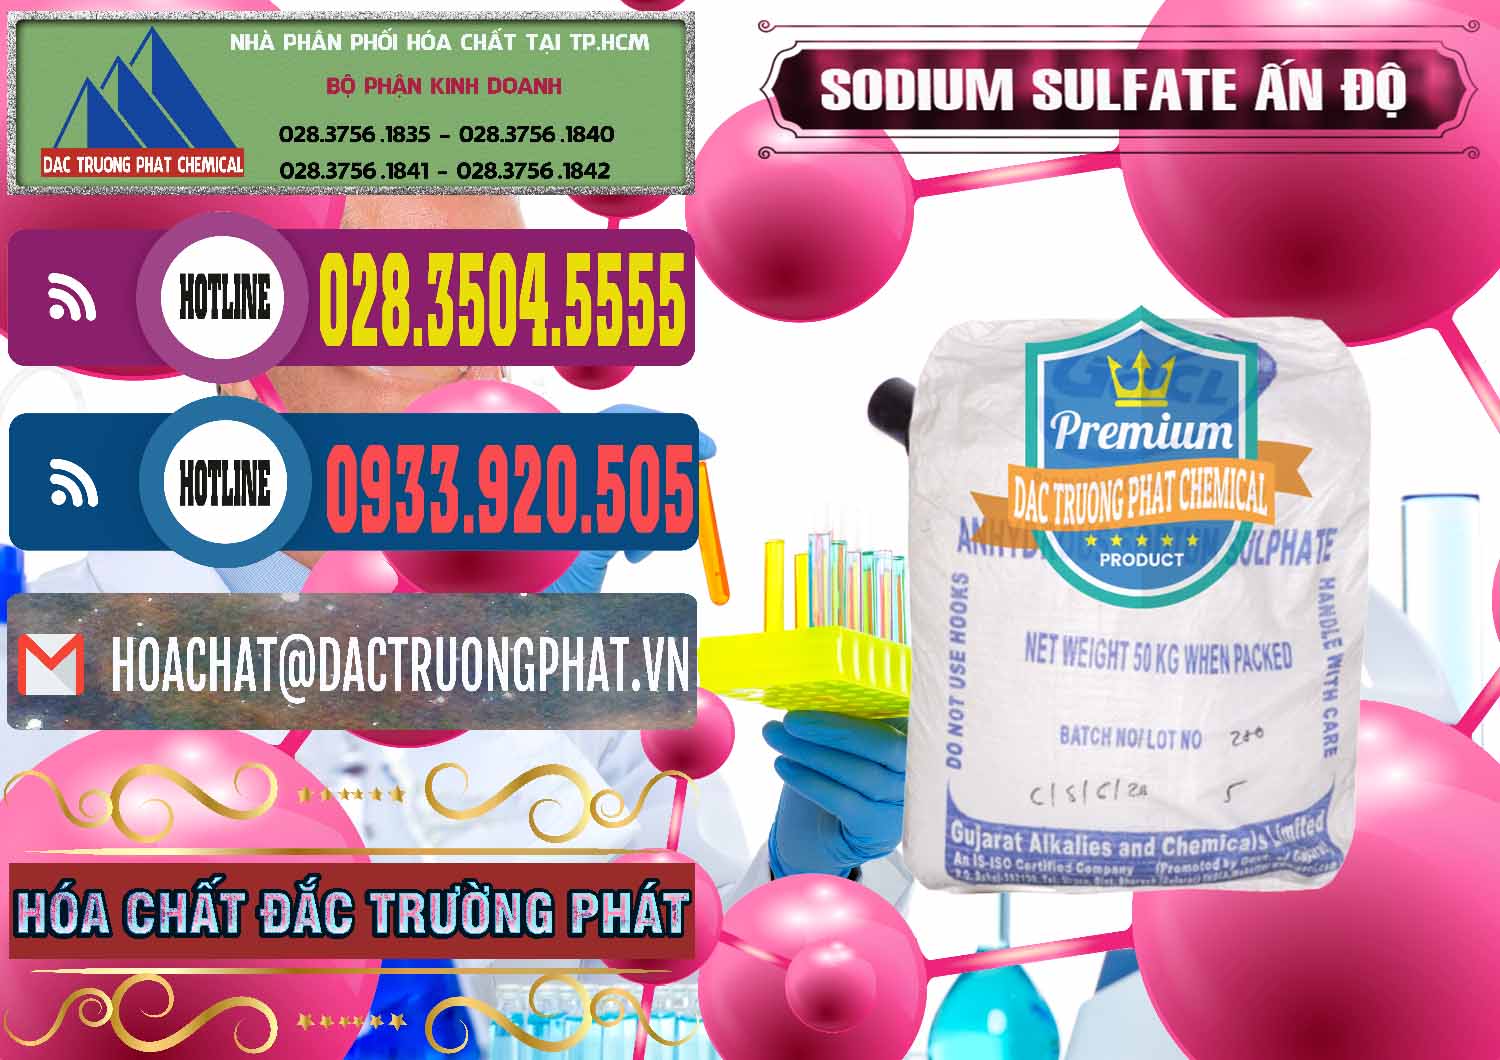 Cty chuyên bán - cung ứng Sodium Sulphate - Muối Sunfat Na2SO4 GACL Ấn Độ India - 0461 - Công ty bán - phân phối hóa chất tại TP.HCM - muabanhoachat.com.vn